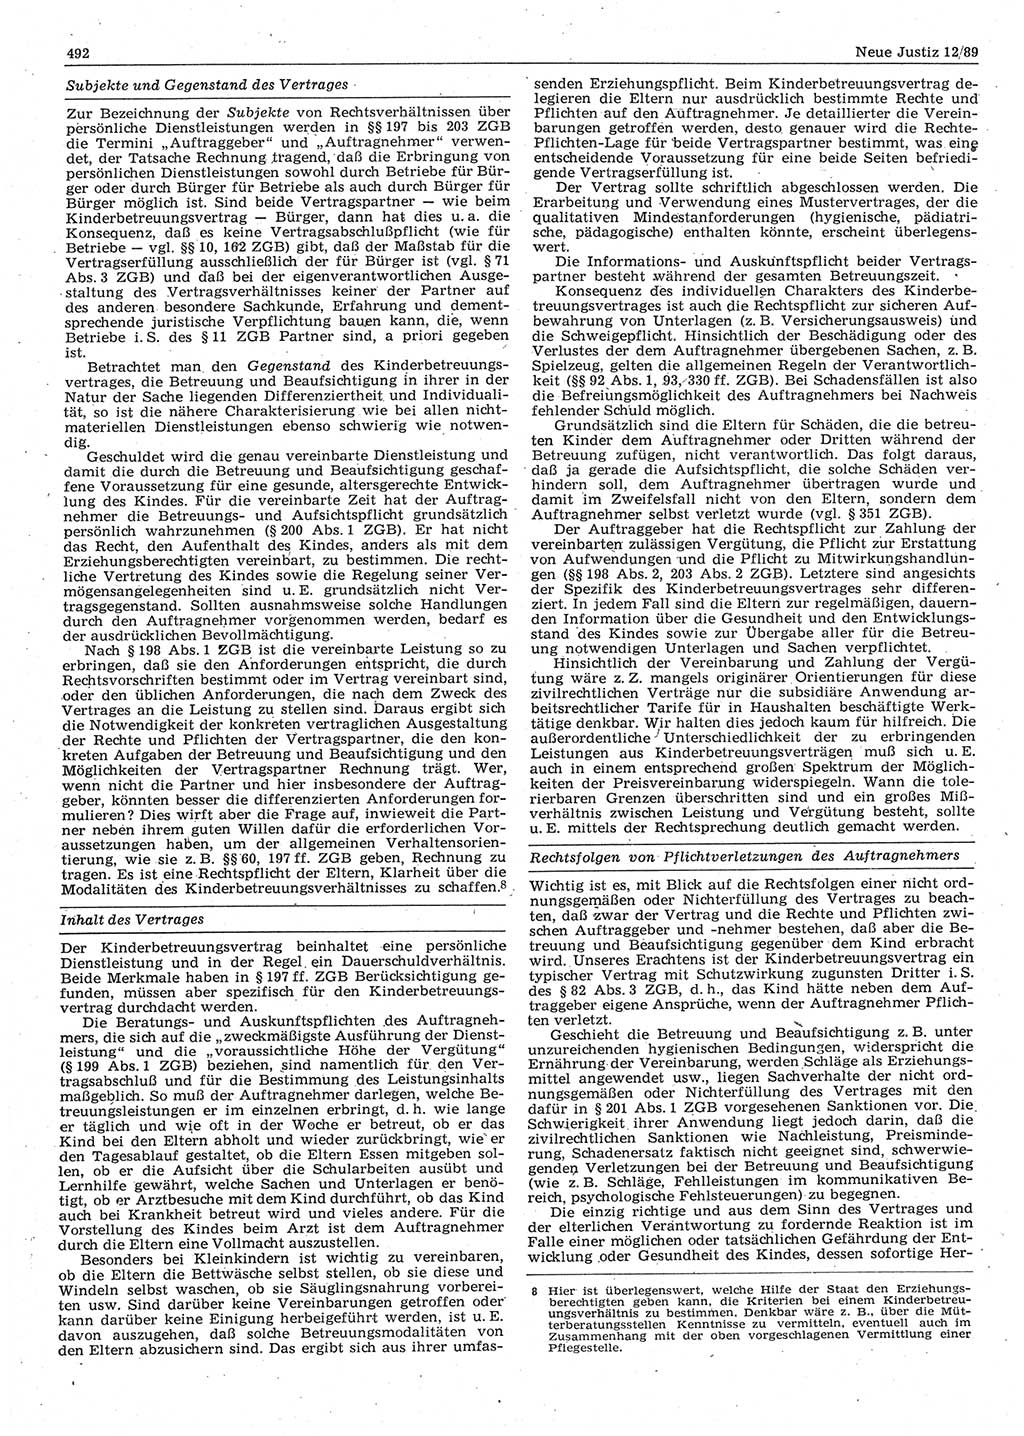 Neue Justiz (NJ), Zeitschrift für sozialistisches Recht und Gesetzlichkeit [Deutsche Demokratische Republik (DDR)], 43. Jahrgang 1989, Seite 492 (NJ DDR 1989, S. 492)